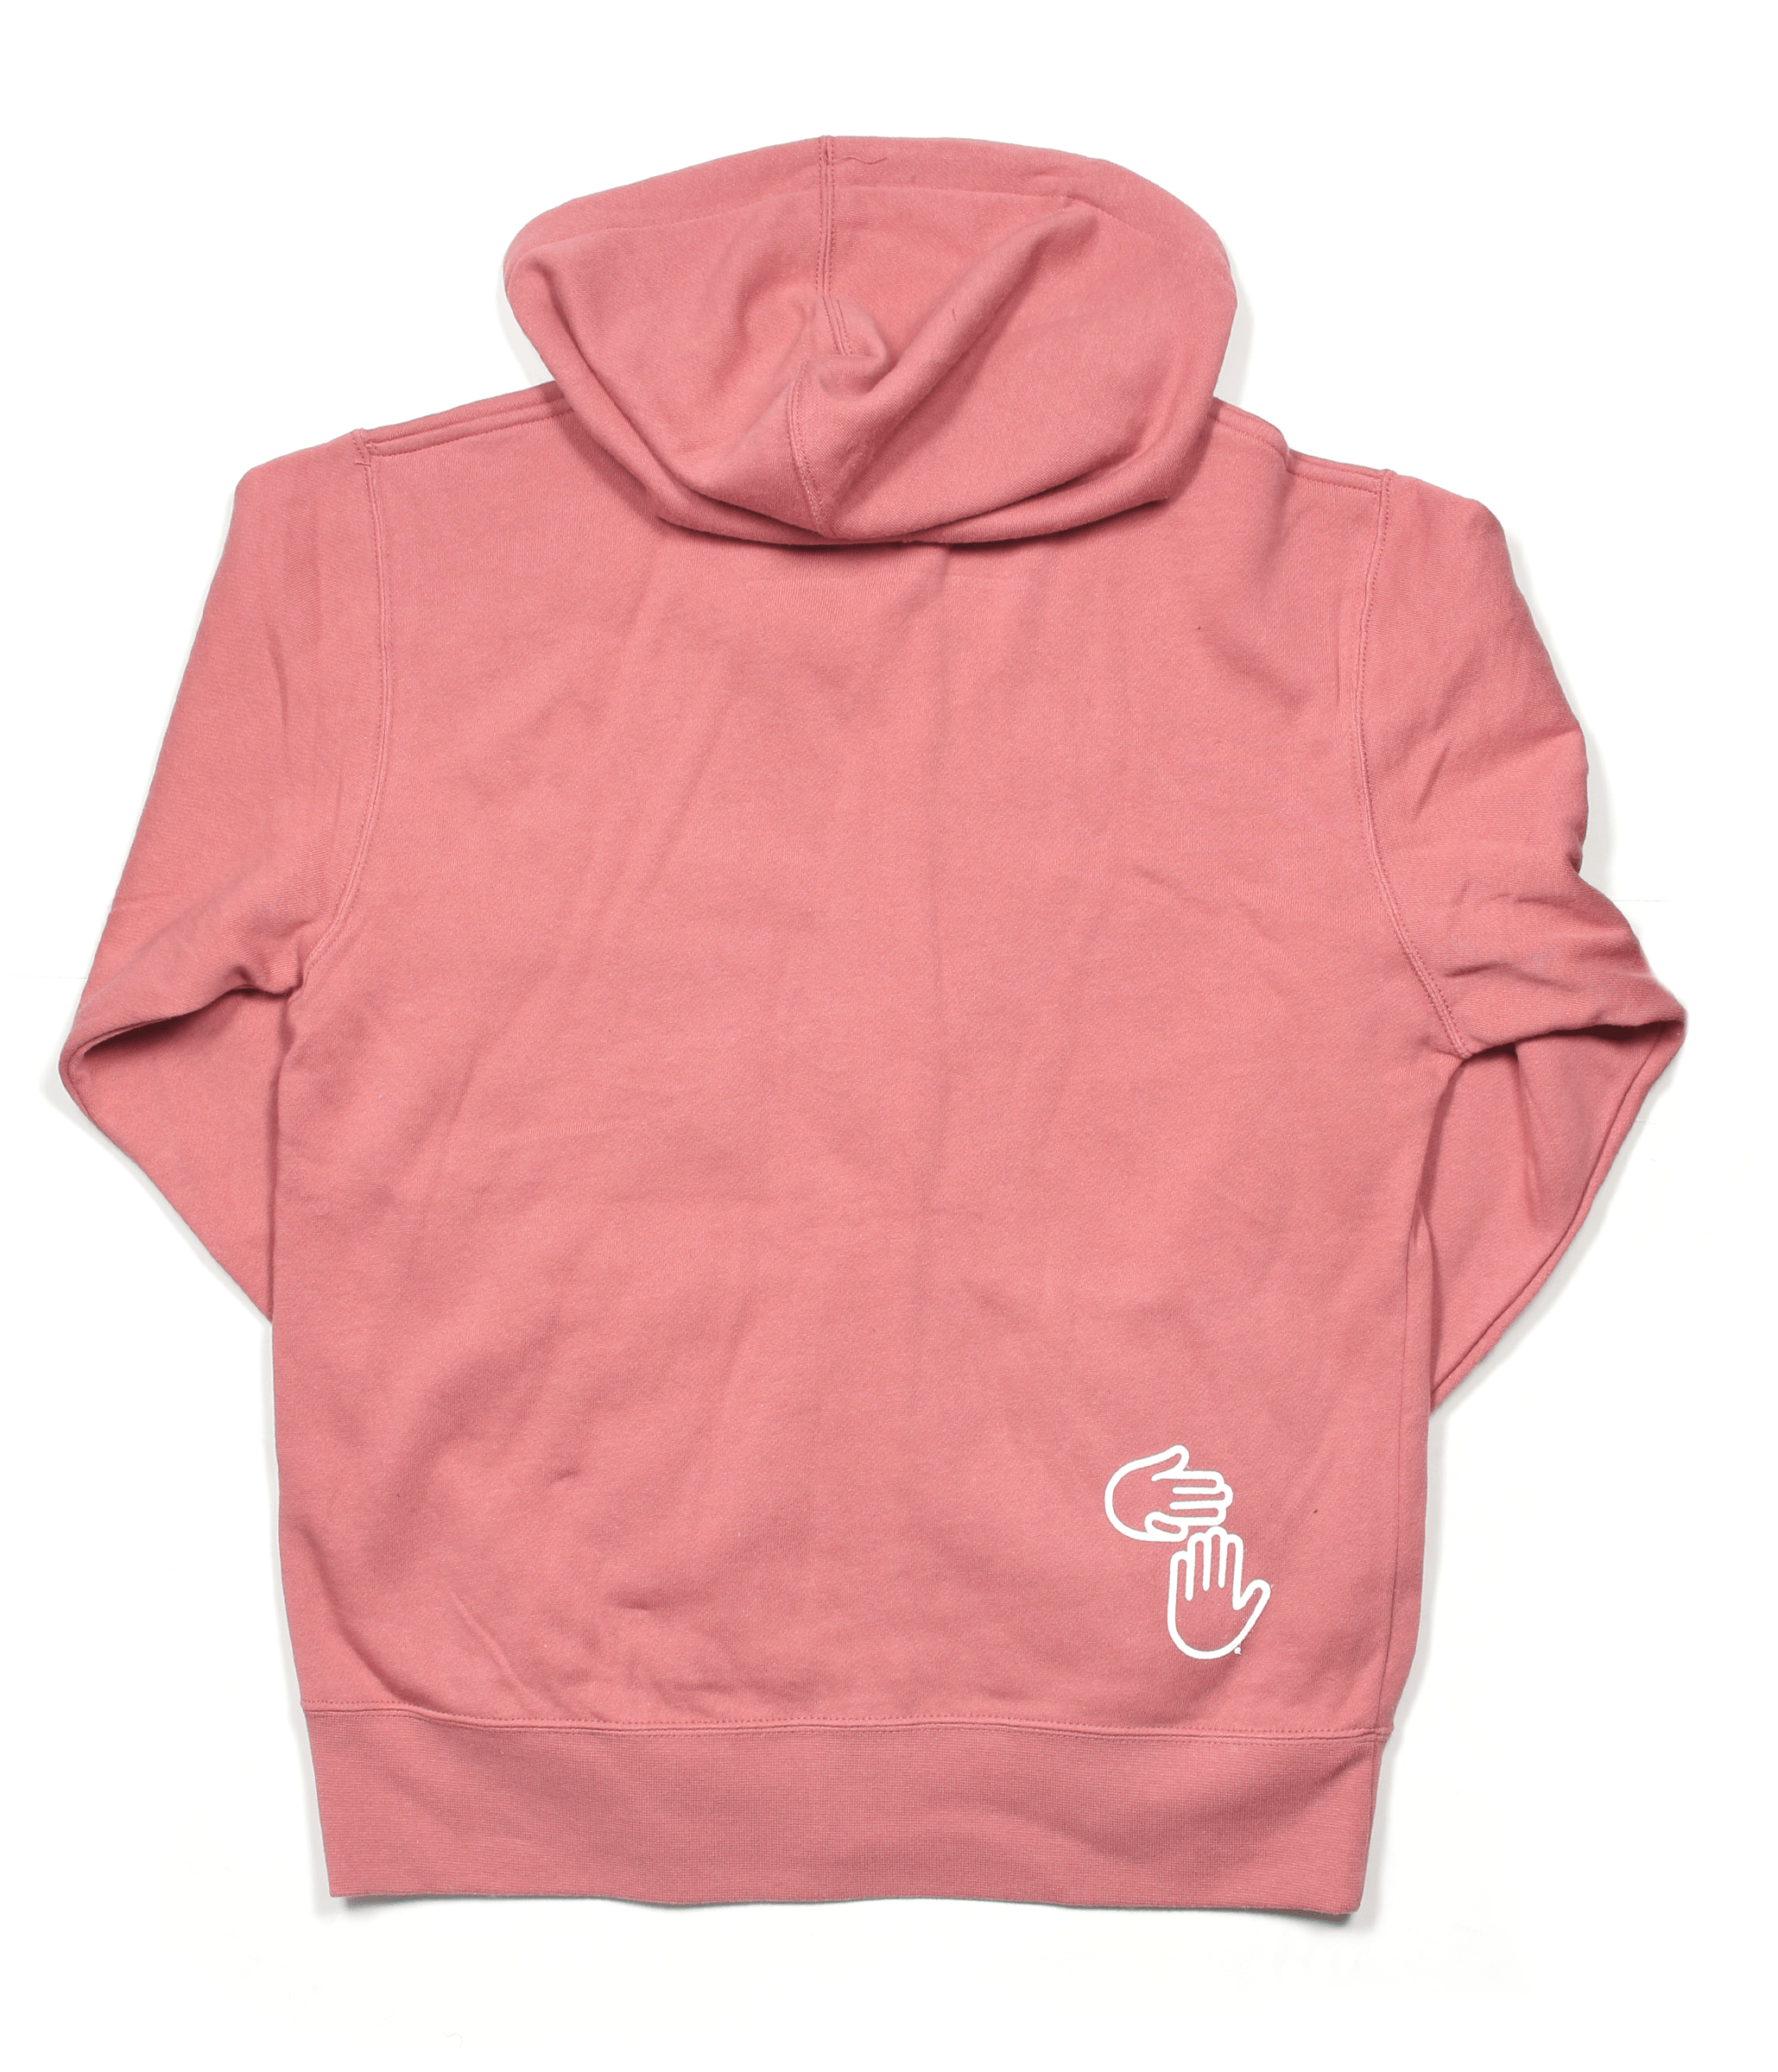 dusty rose hoodie